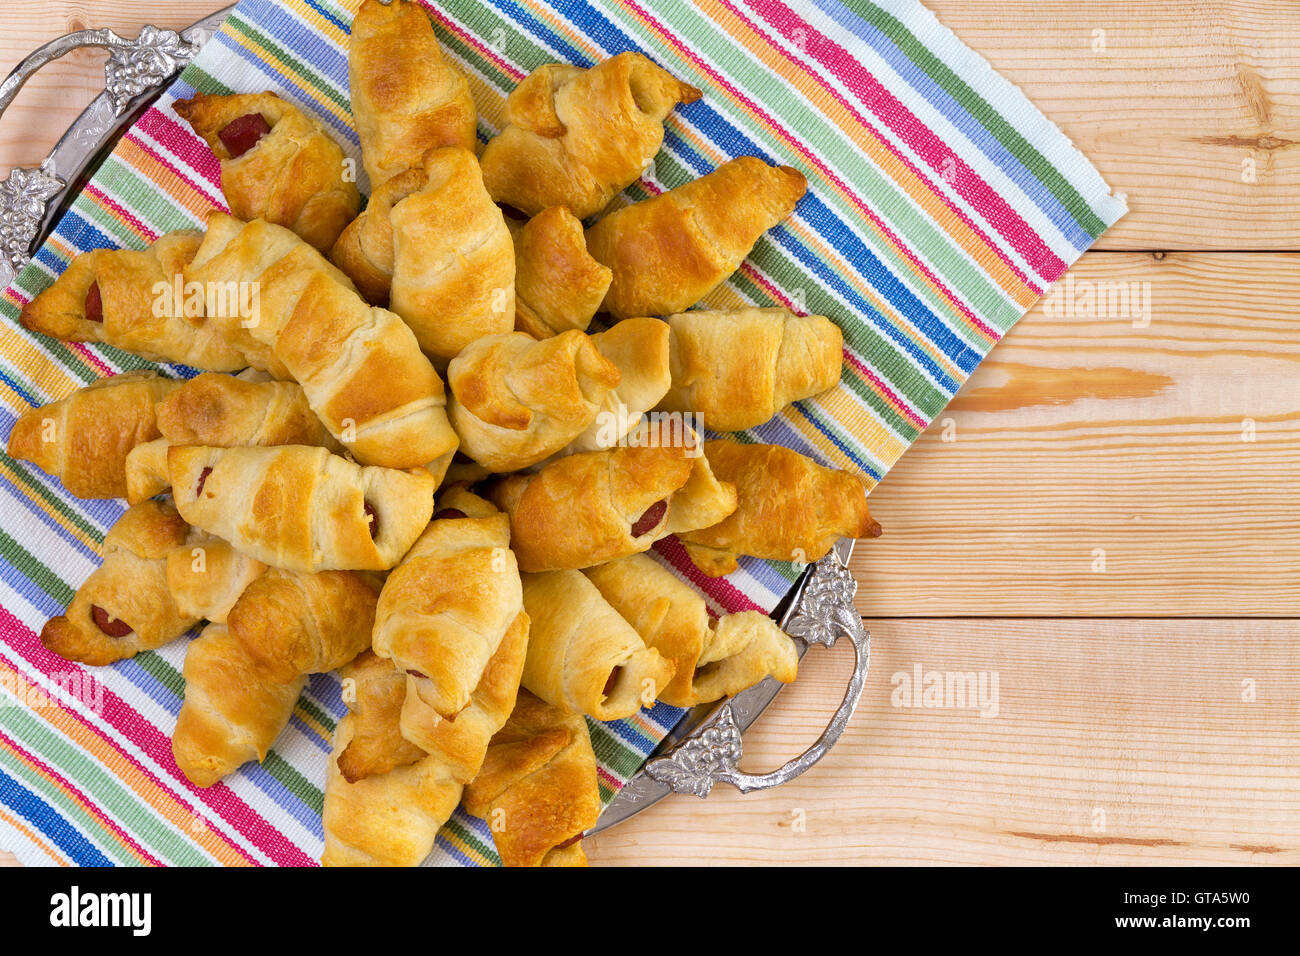 Haufen von köstlichen frischen Hot-Dog-Croissants auf einem bunten Serviette und Tablett auf einem hölzernen Picknicktisch für leckeres Finger Food summ Stockfoto